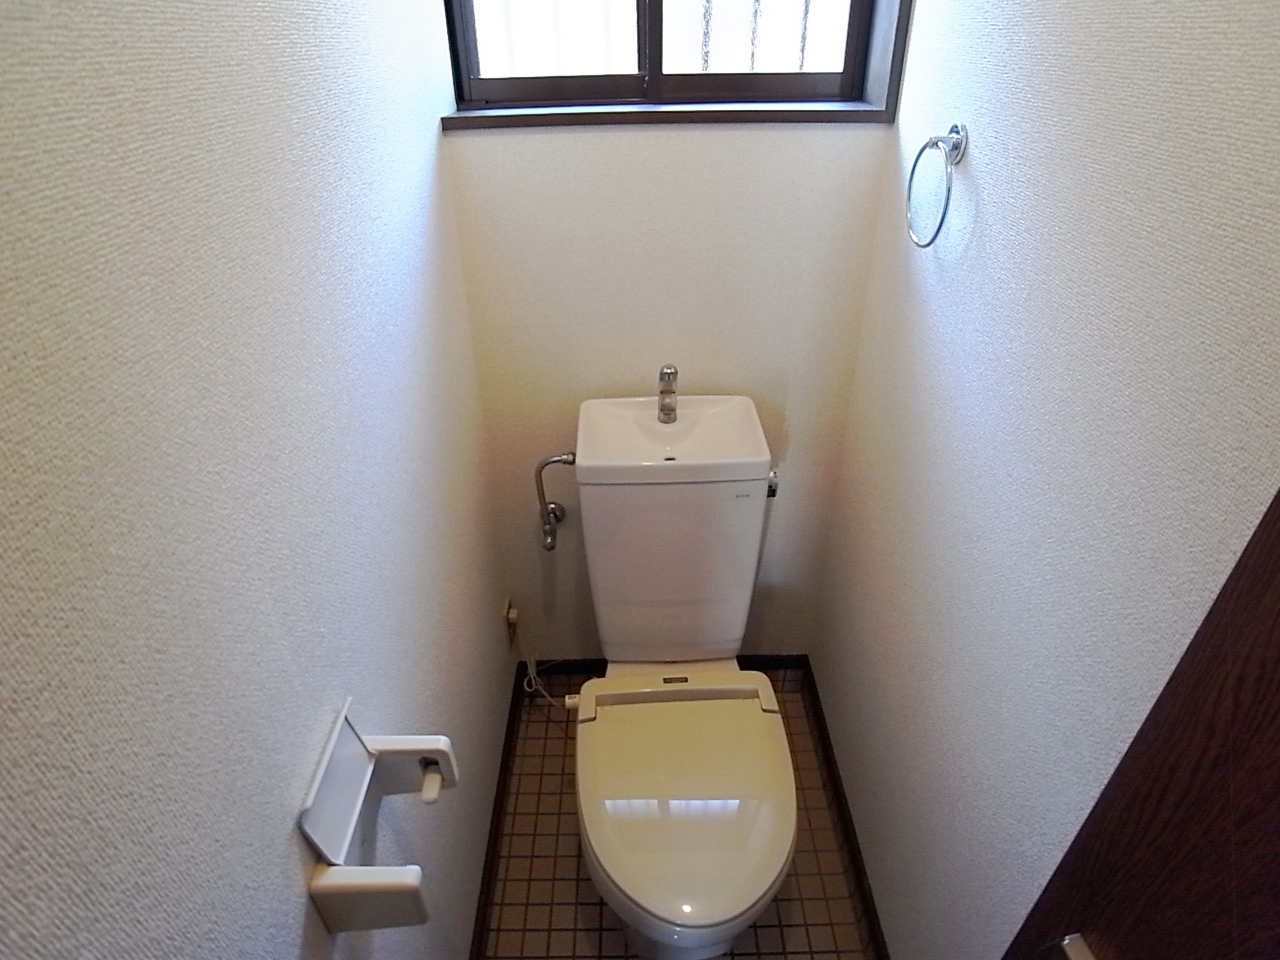 Toilet. It has a window in the toilet. 